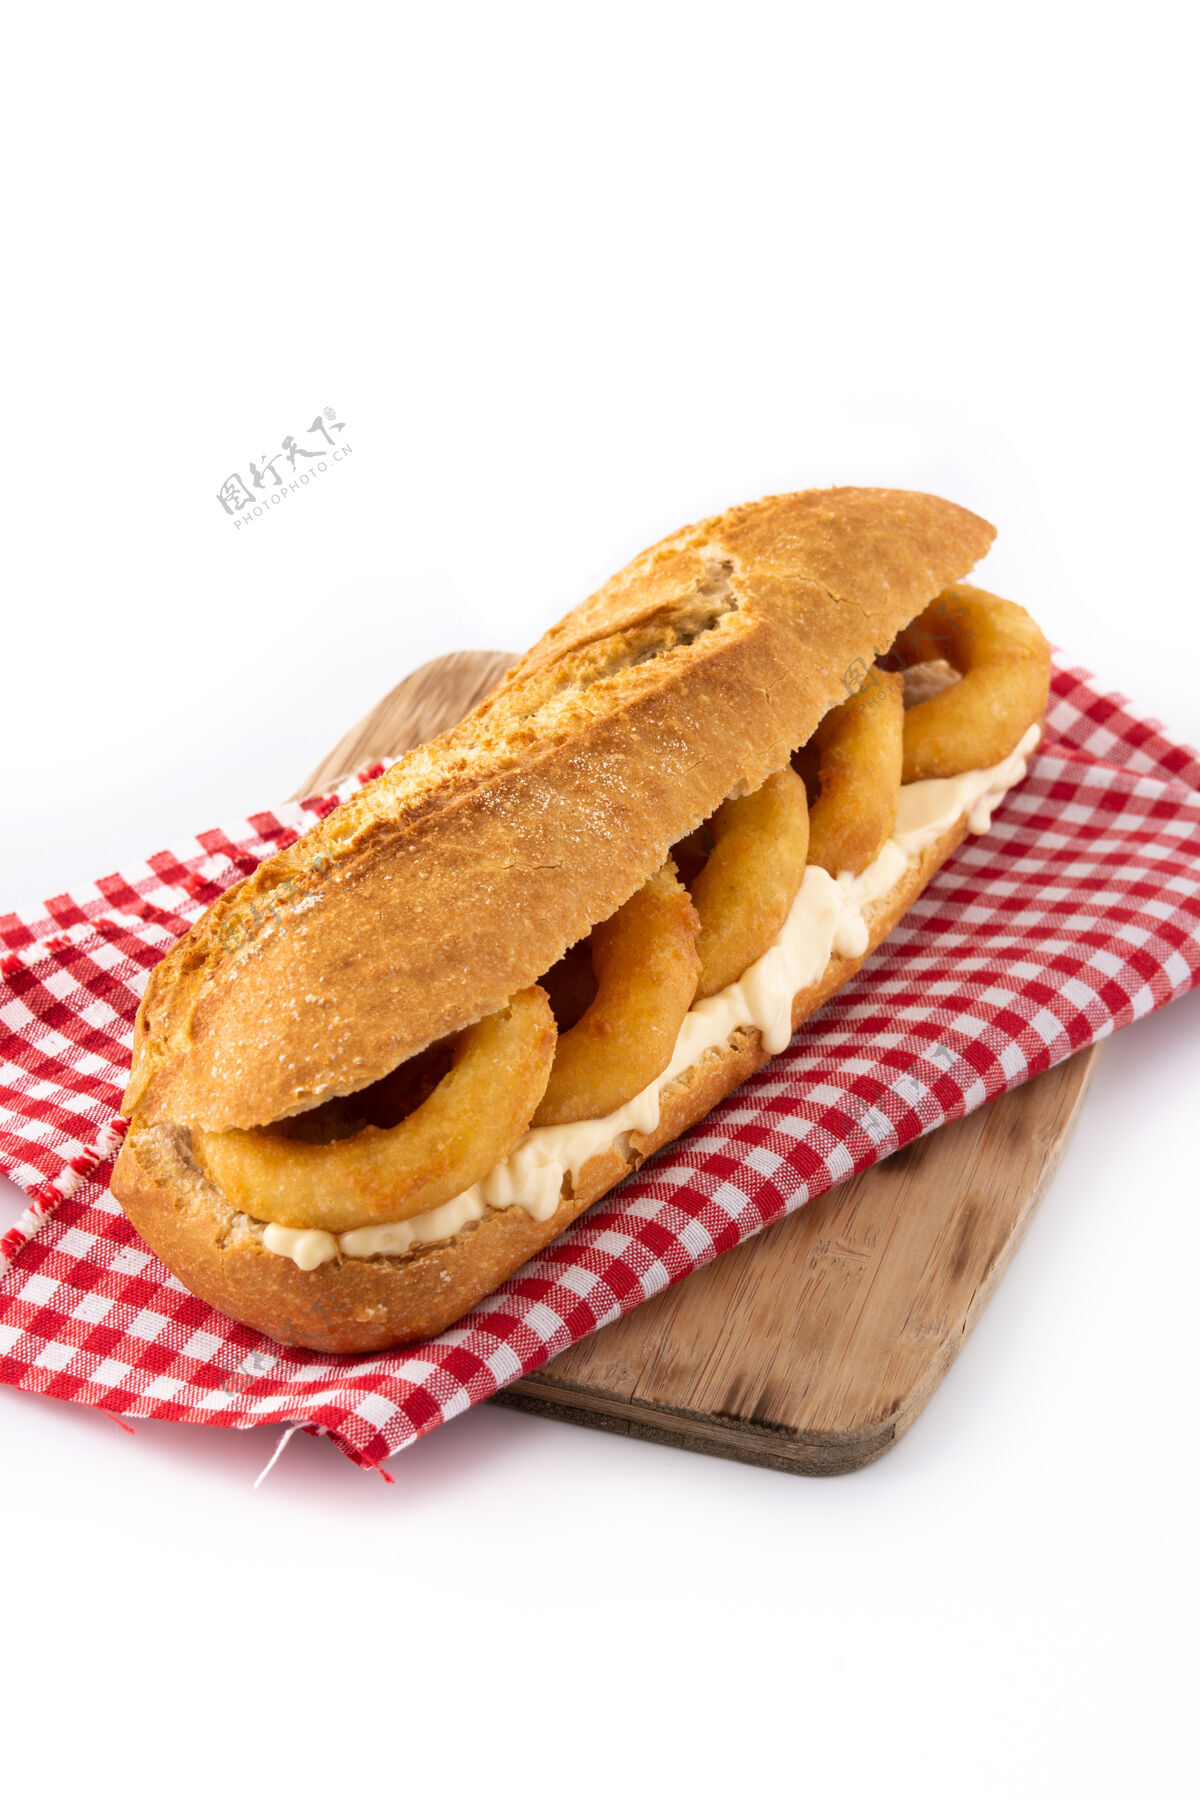 蛋黄酱卡拉马里环三明治 来自马德里的典型食物海鲜典型戒指